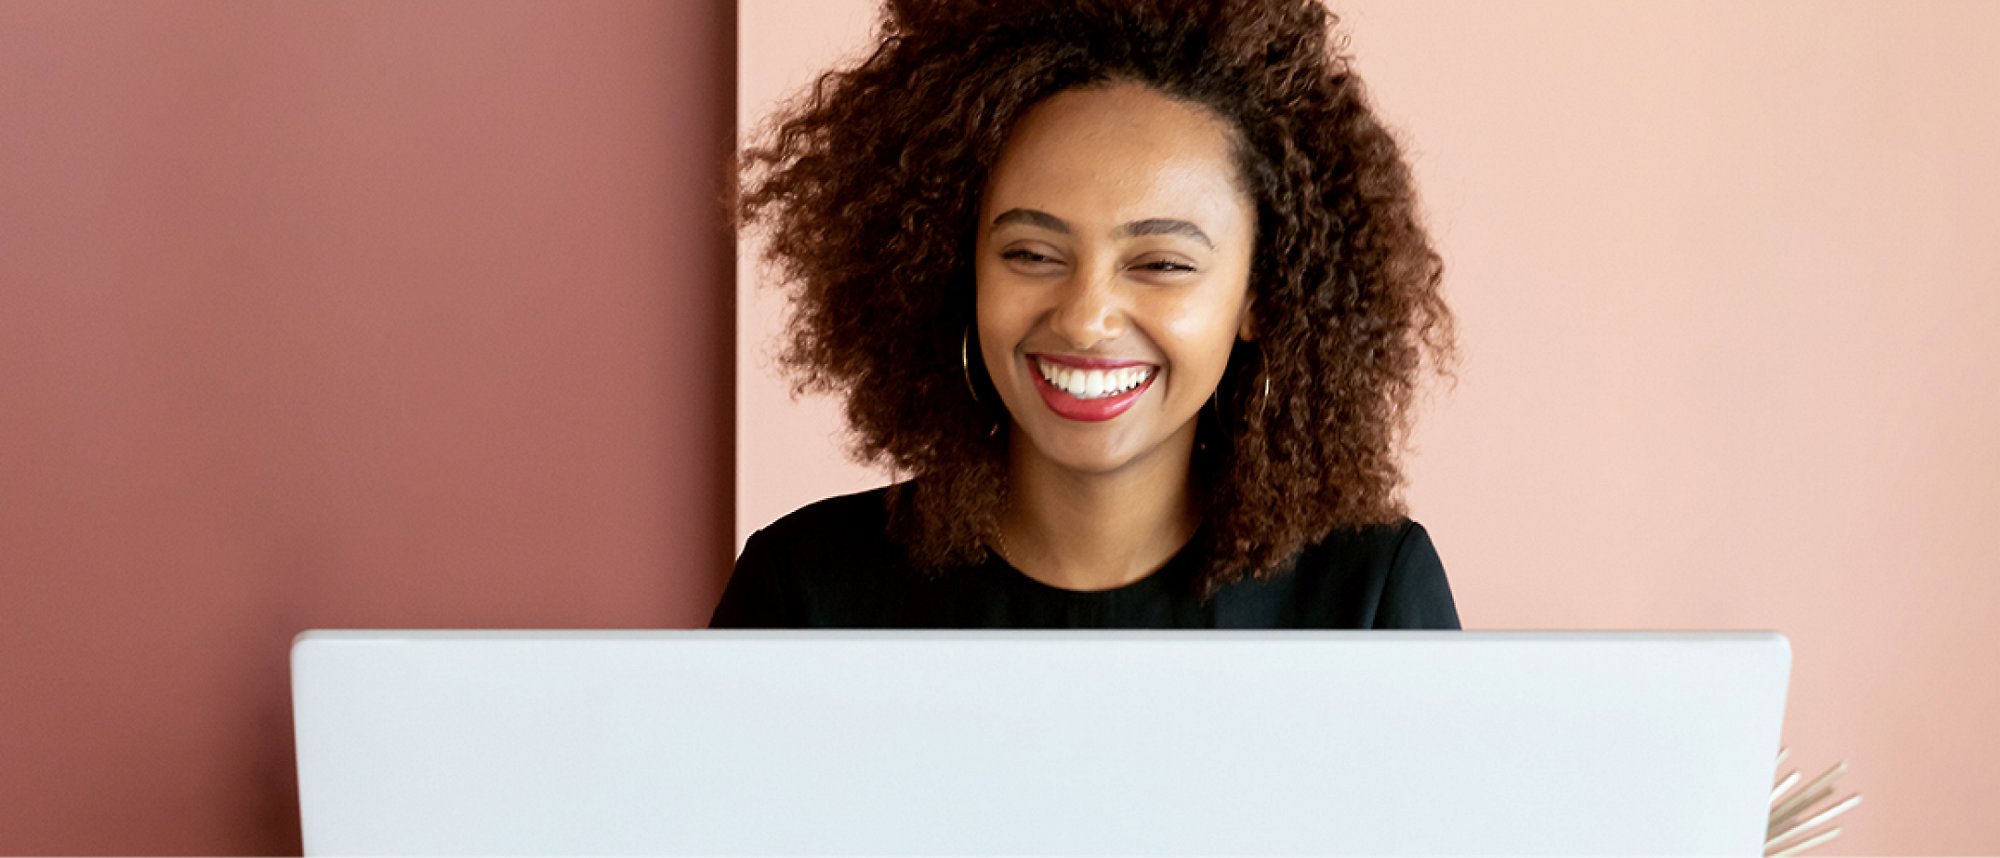 ผู้หญิงกำลังยิ้มและทำงานบนแล็ปท็อป